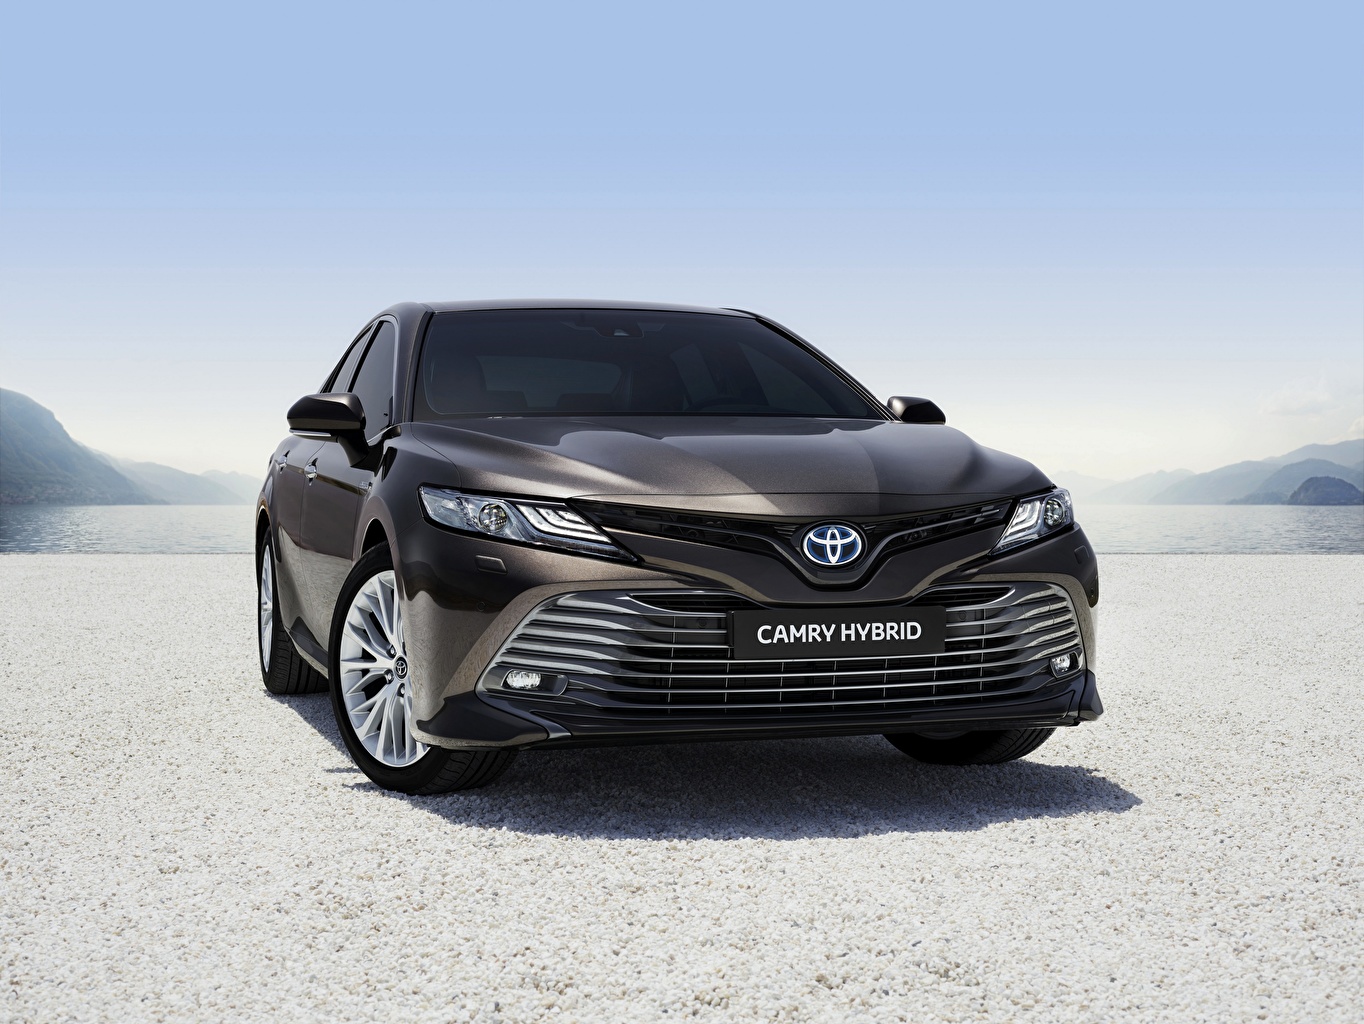 Image Toyota Camry Hybrid Vehicle Black Front